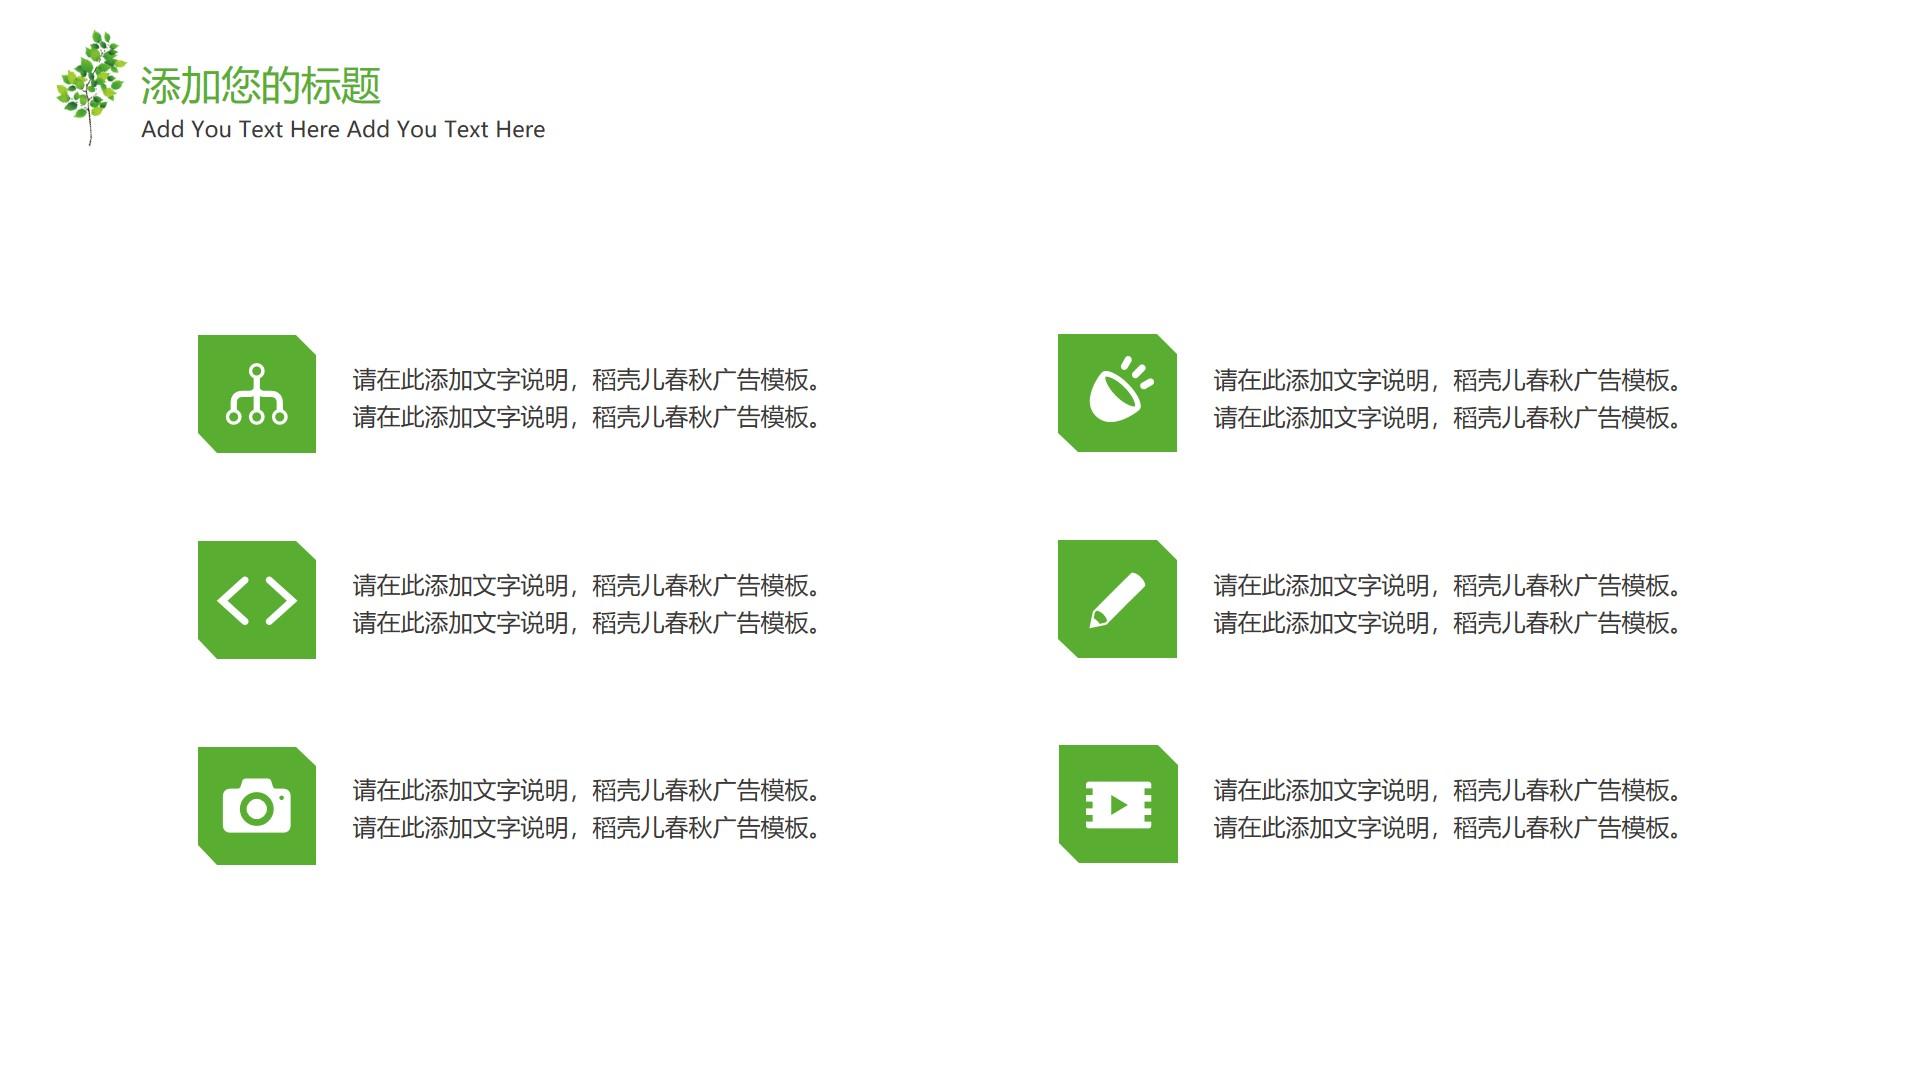 教育教学绿色白色简洁素雅text 稻壳 春秋 广告 add云素材PPT模板1672673917876